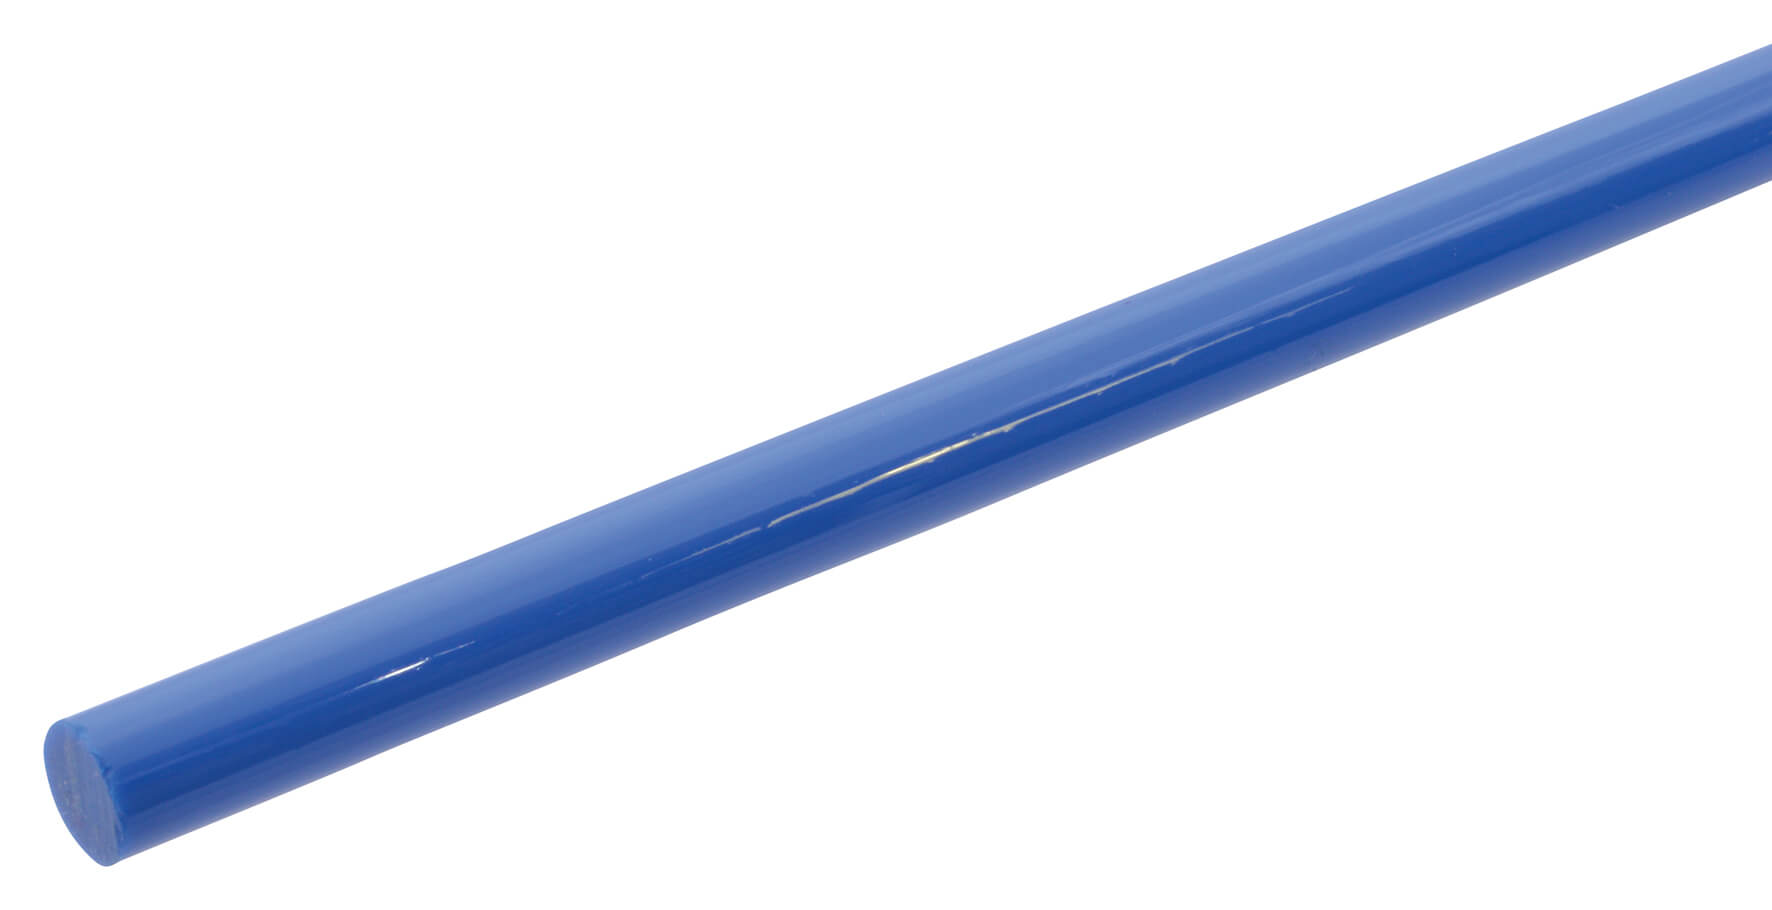 Acrylic Rod 6.4mm x 610mm - Solid Blue